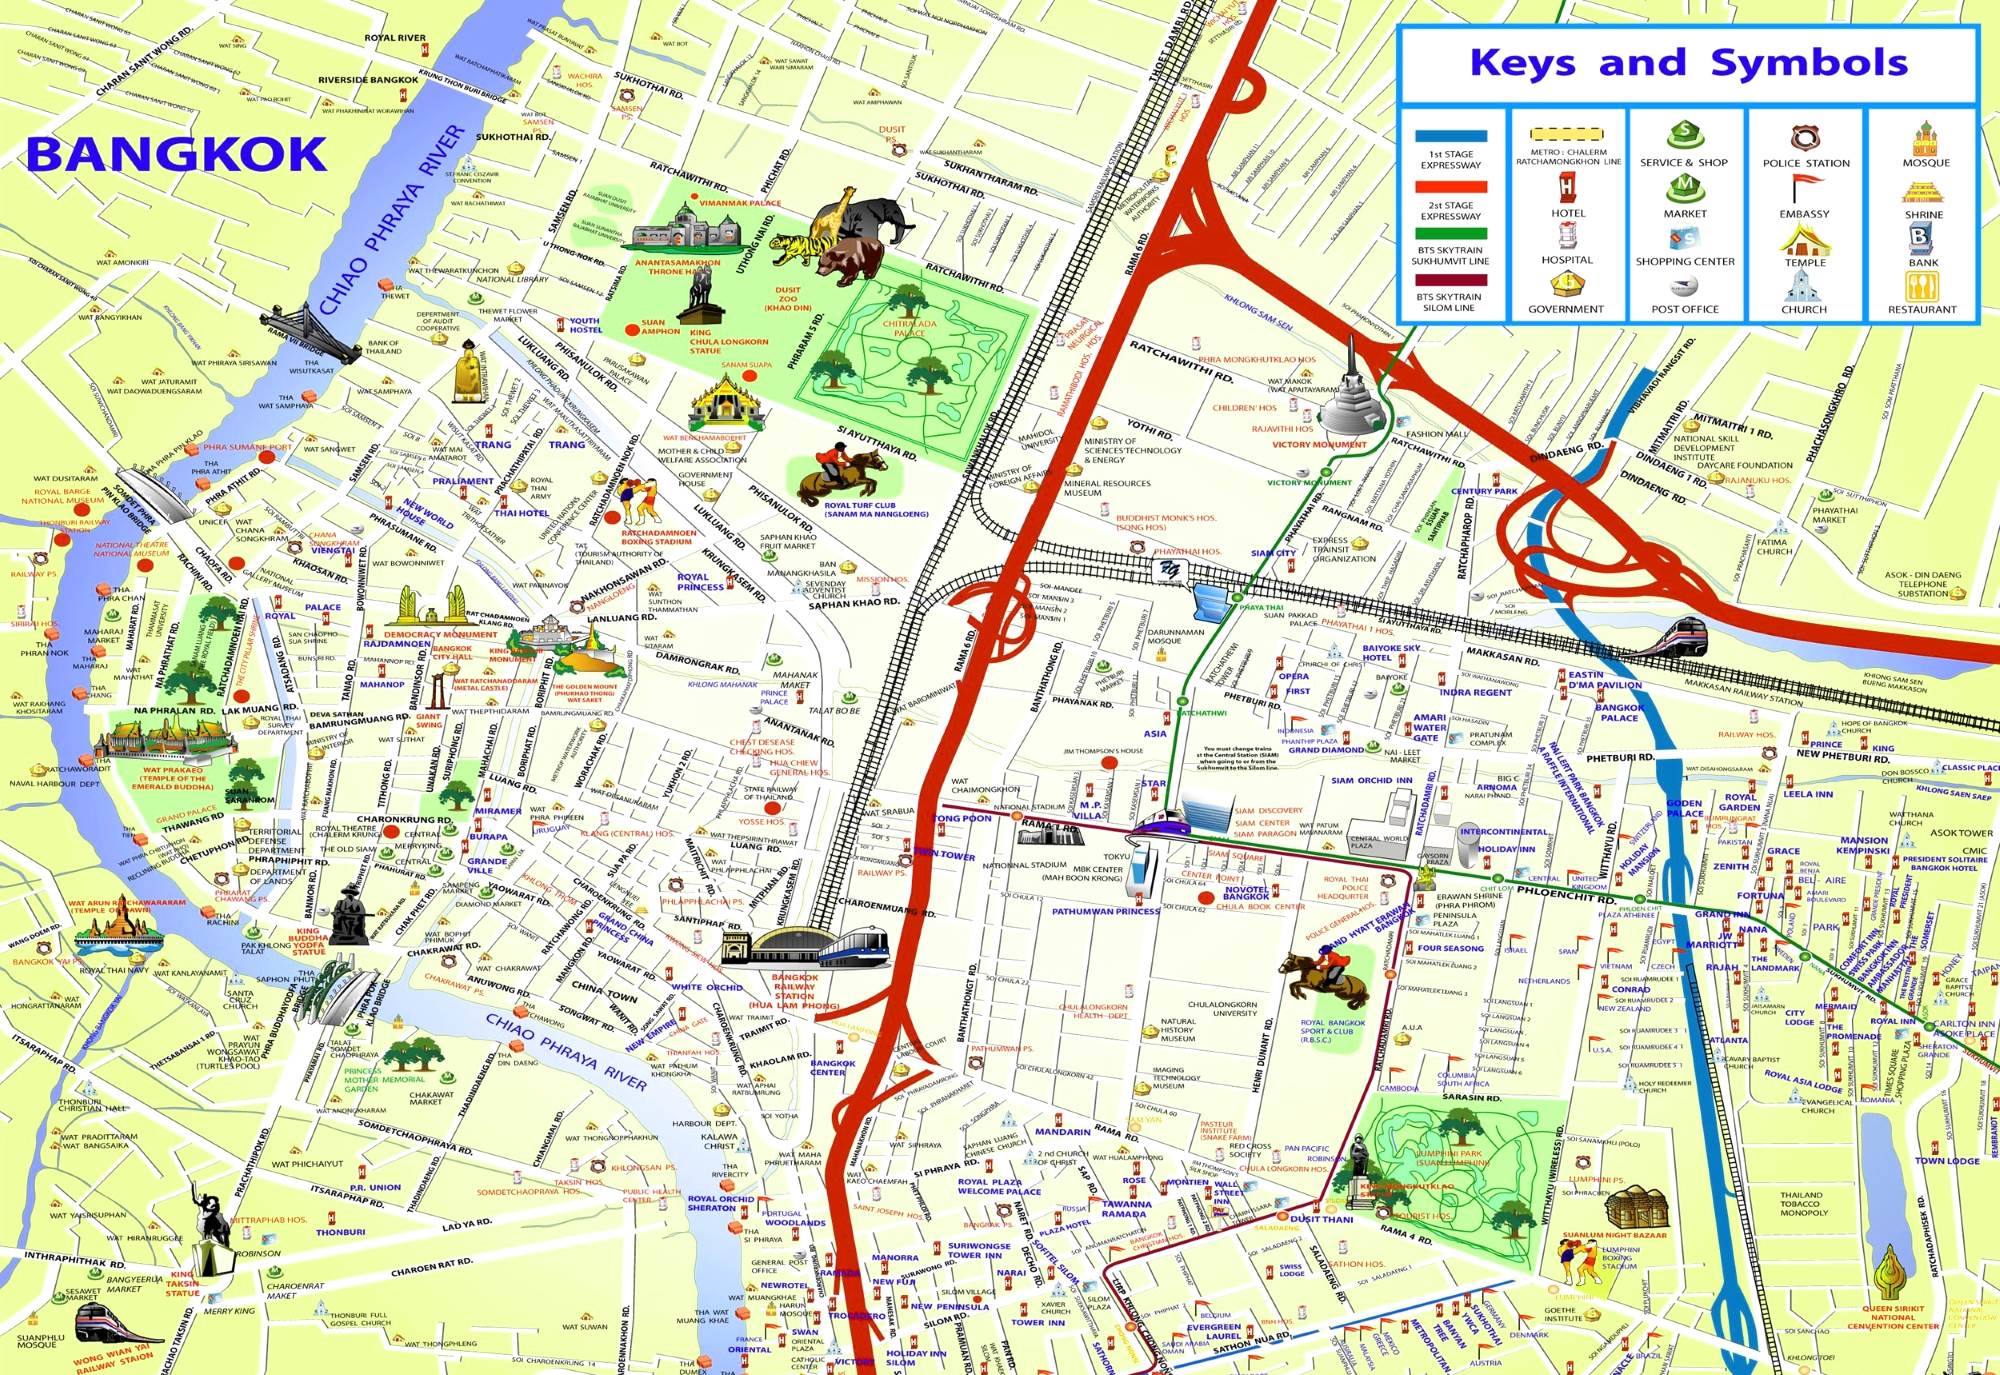 Map of Bangkok with sights